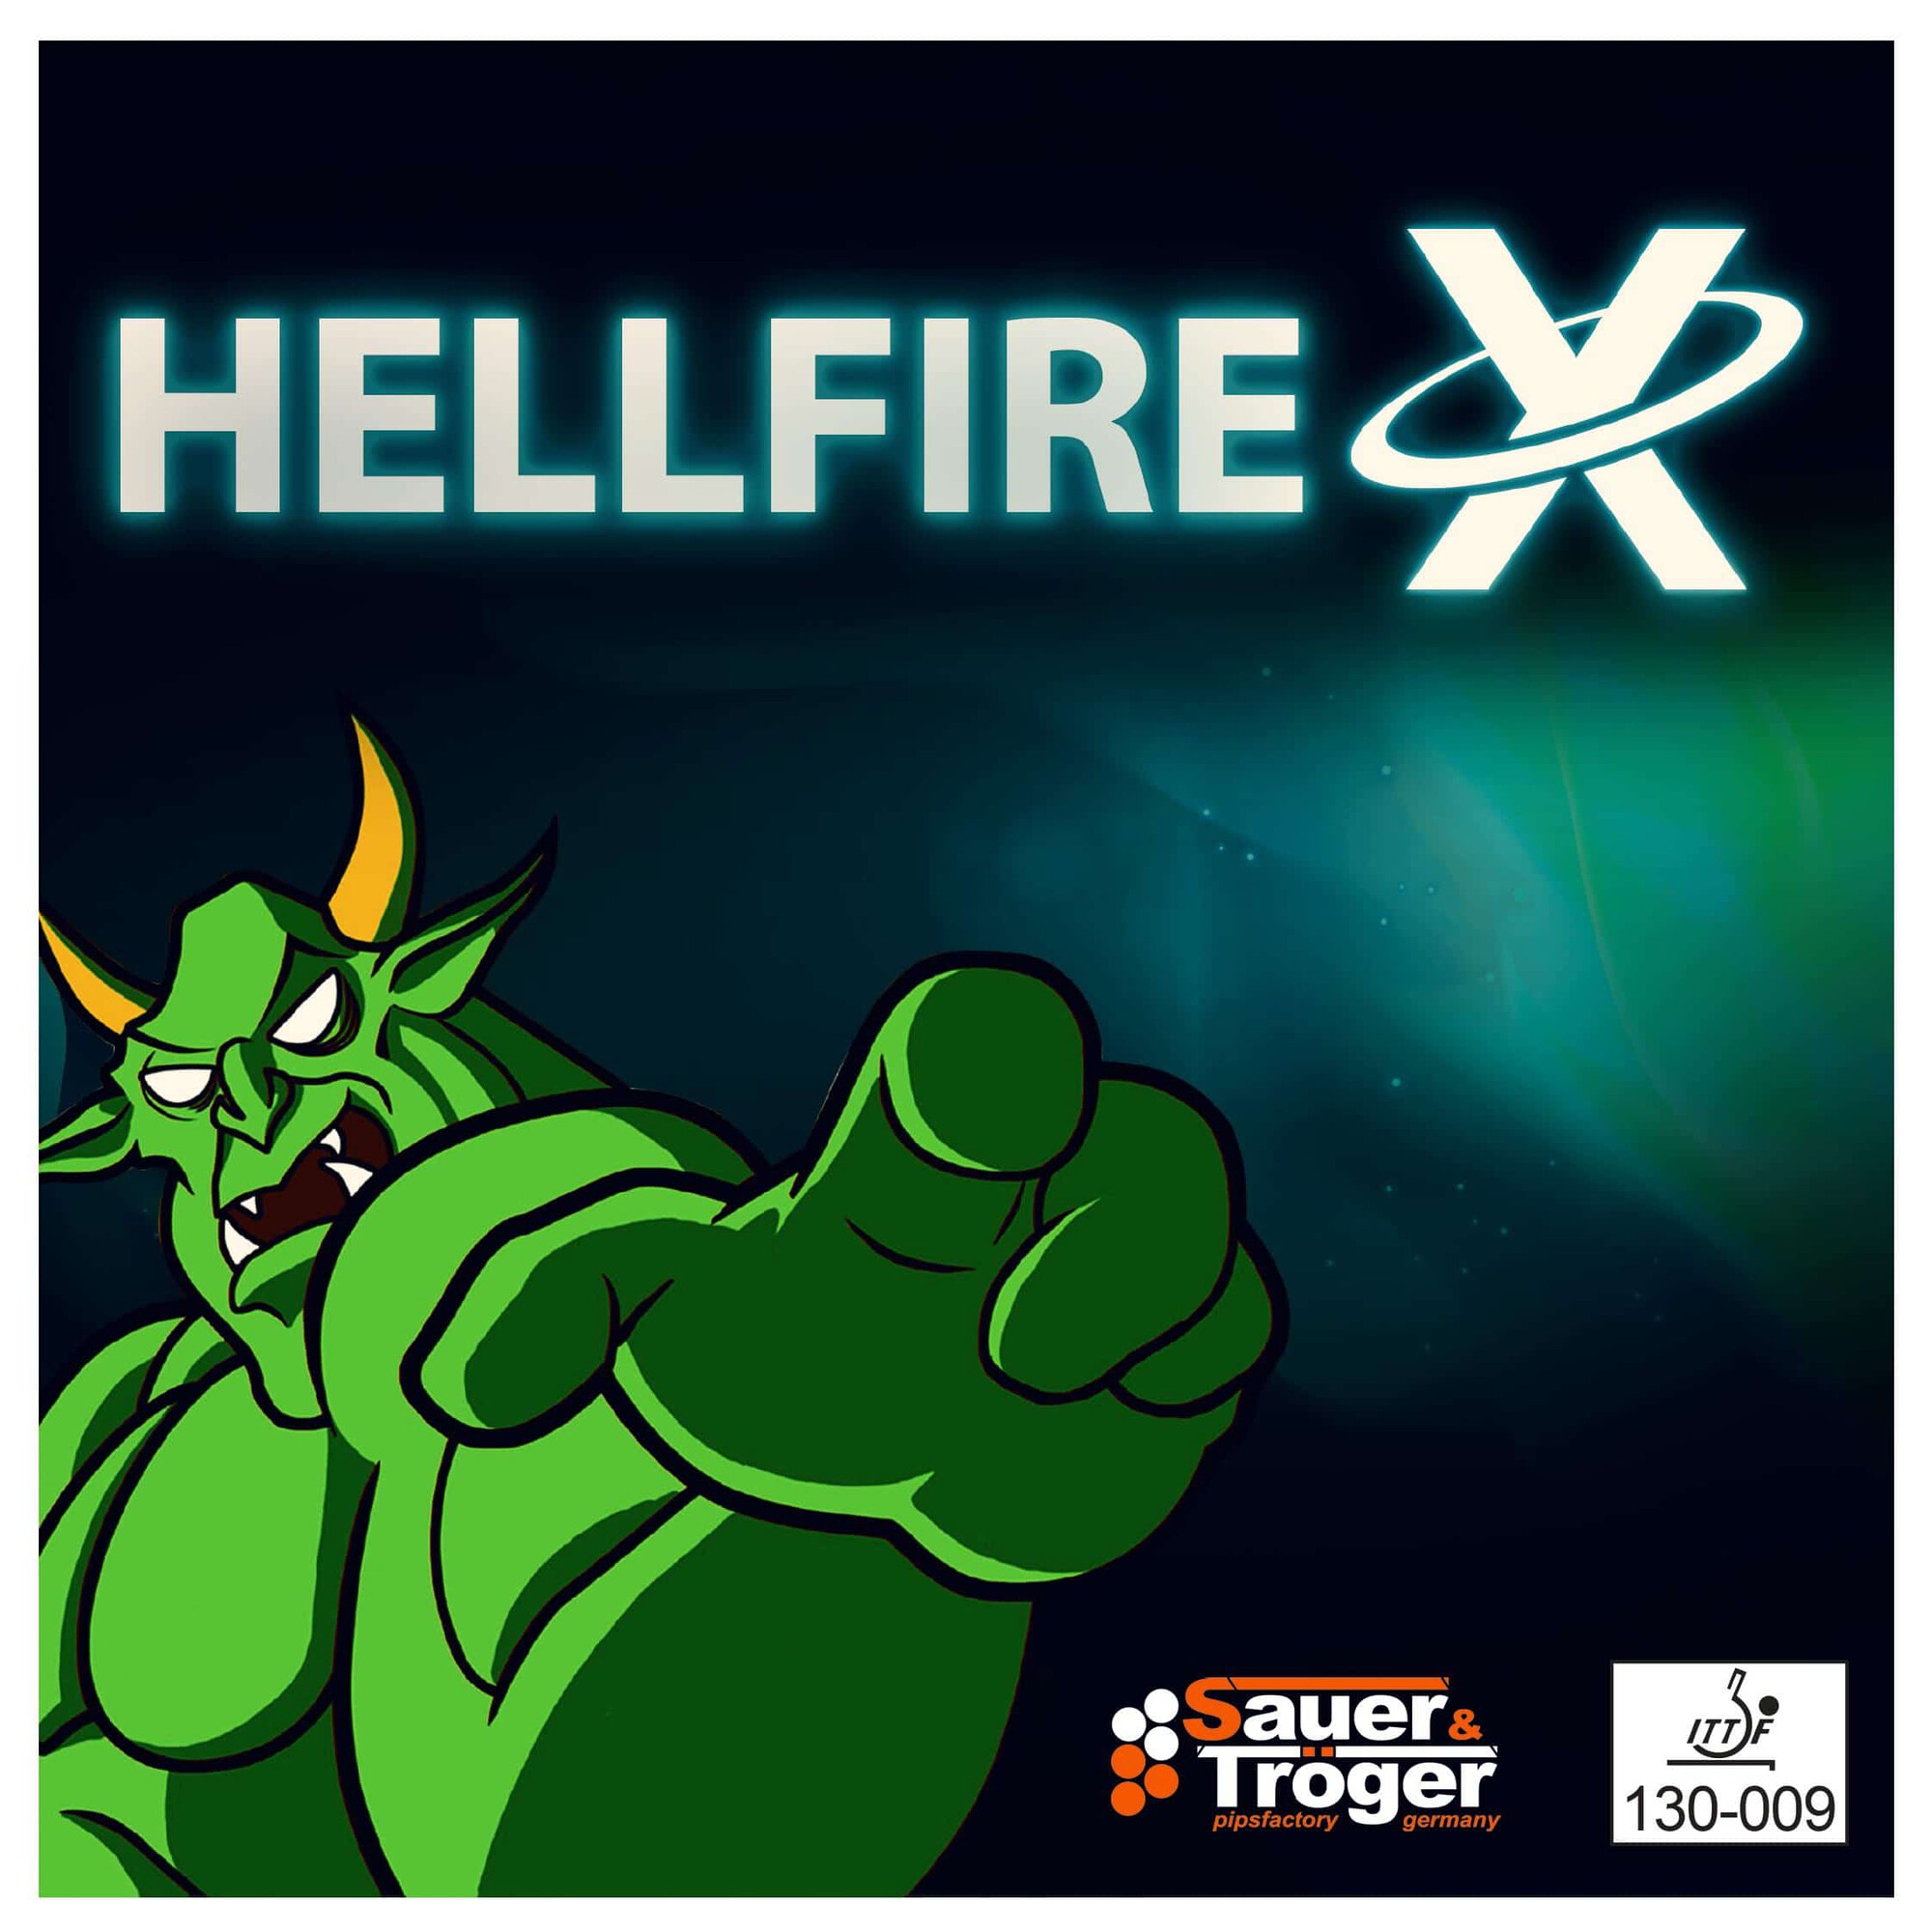 Sauer & Troeger Hellfire X